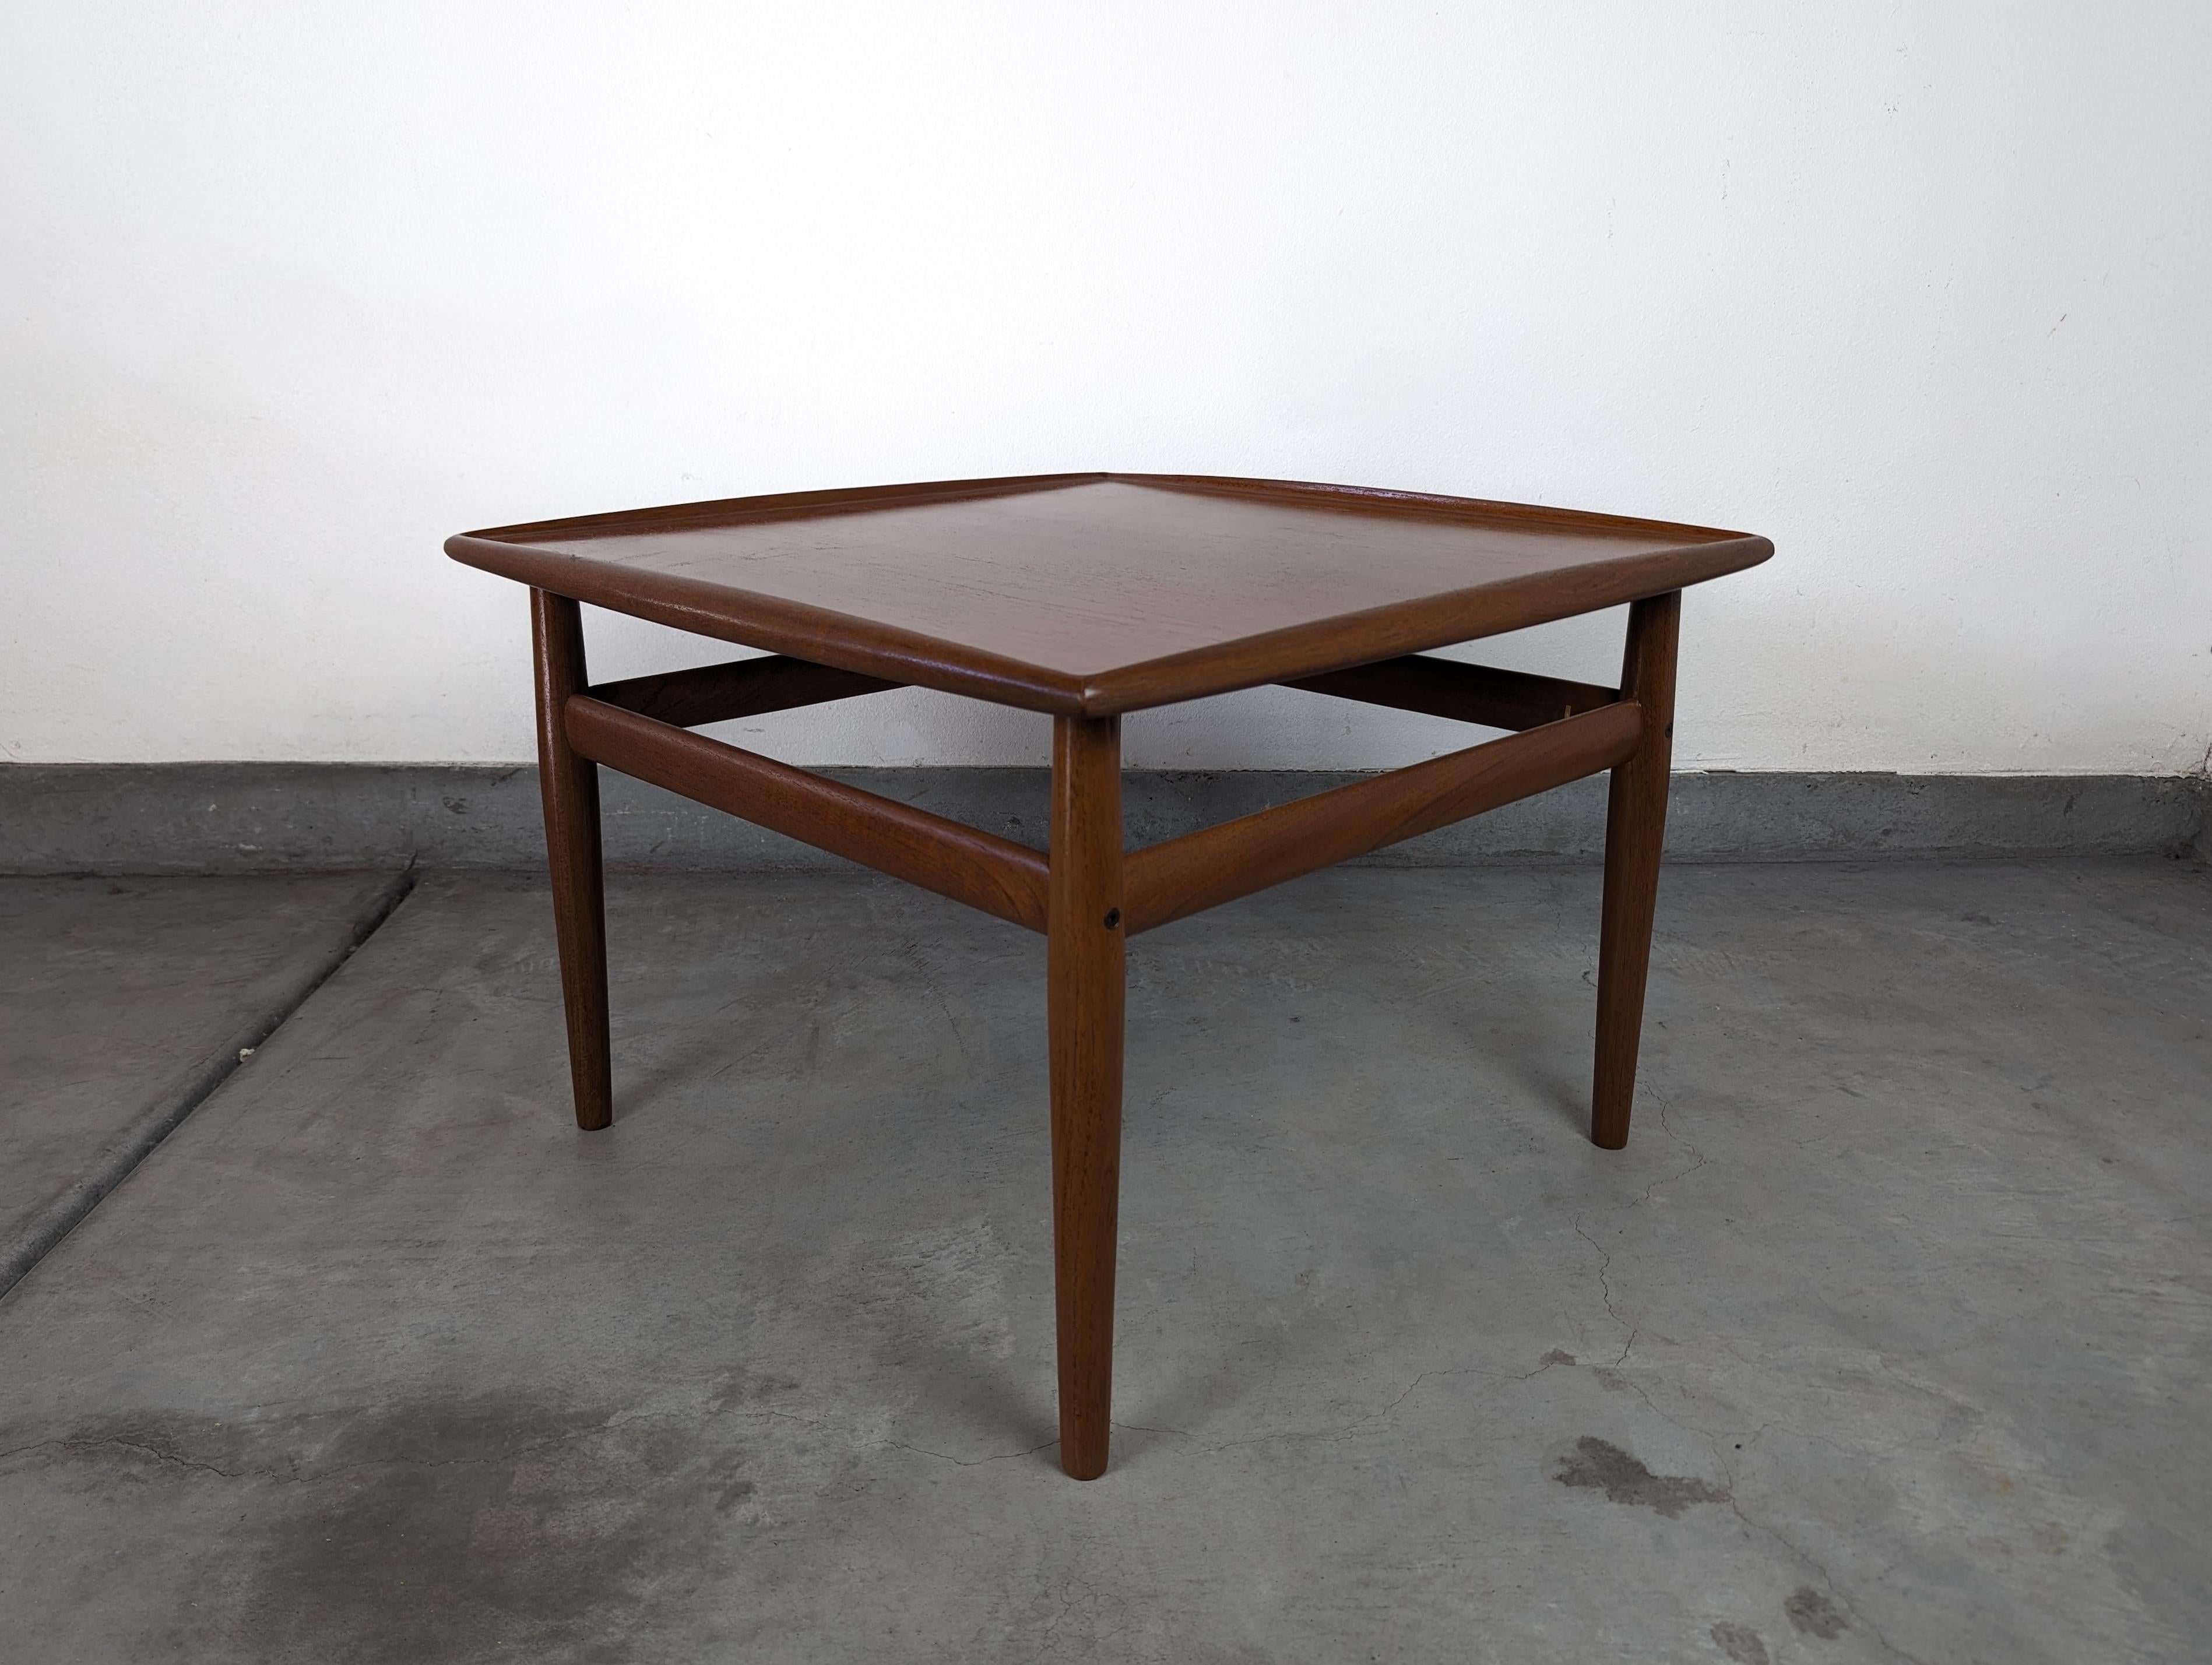 Voici une superbe table d'appoint vintage en teck de la célèbre designer danoise Grete Jalk pour Glostrup Møbelfabrik, datant des années 1960. Cette pièce remarquable de l'histoire danoise servira non seulement d'élément fonctionnel dans votre